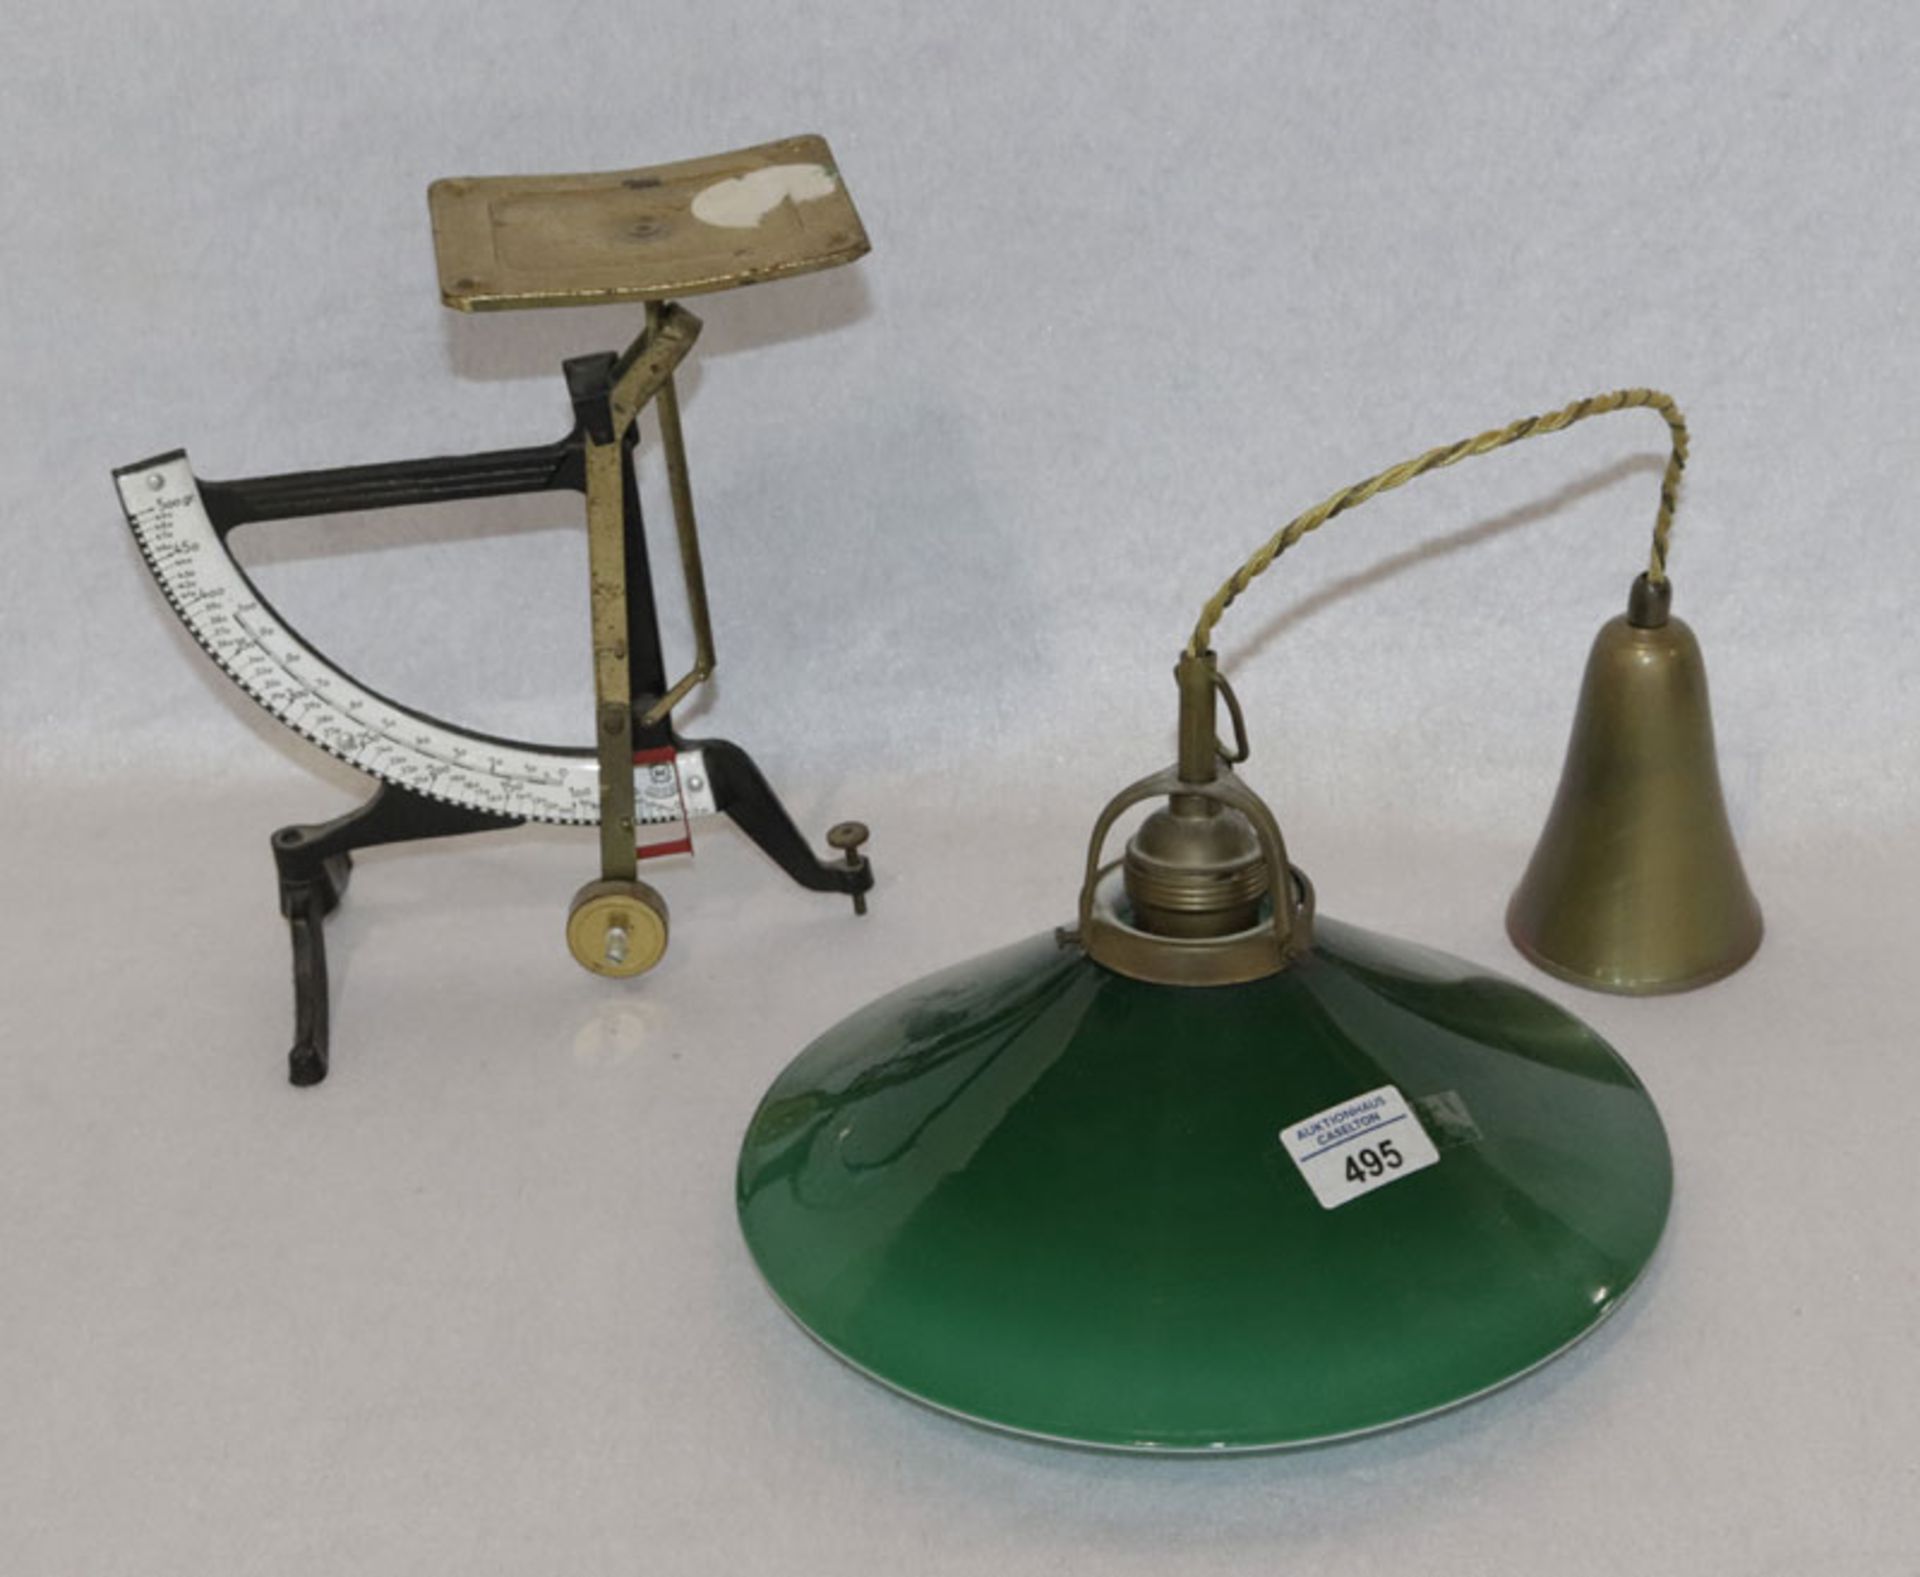 Concav Metall Briefwaage, H 24 cm, B 23 cm, T 15 cm, und Hängelampe mit grün/weißen Glasschirm, H 69